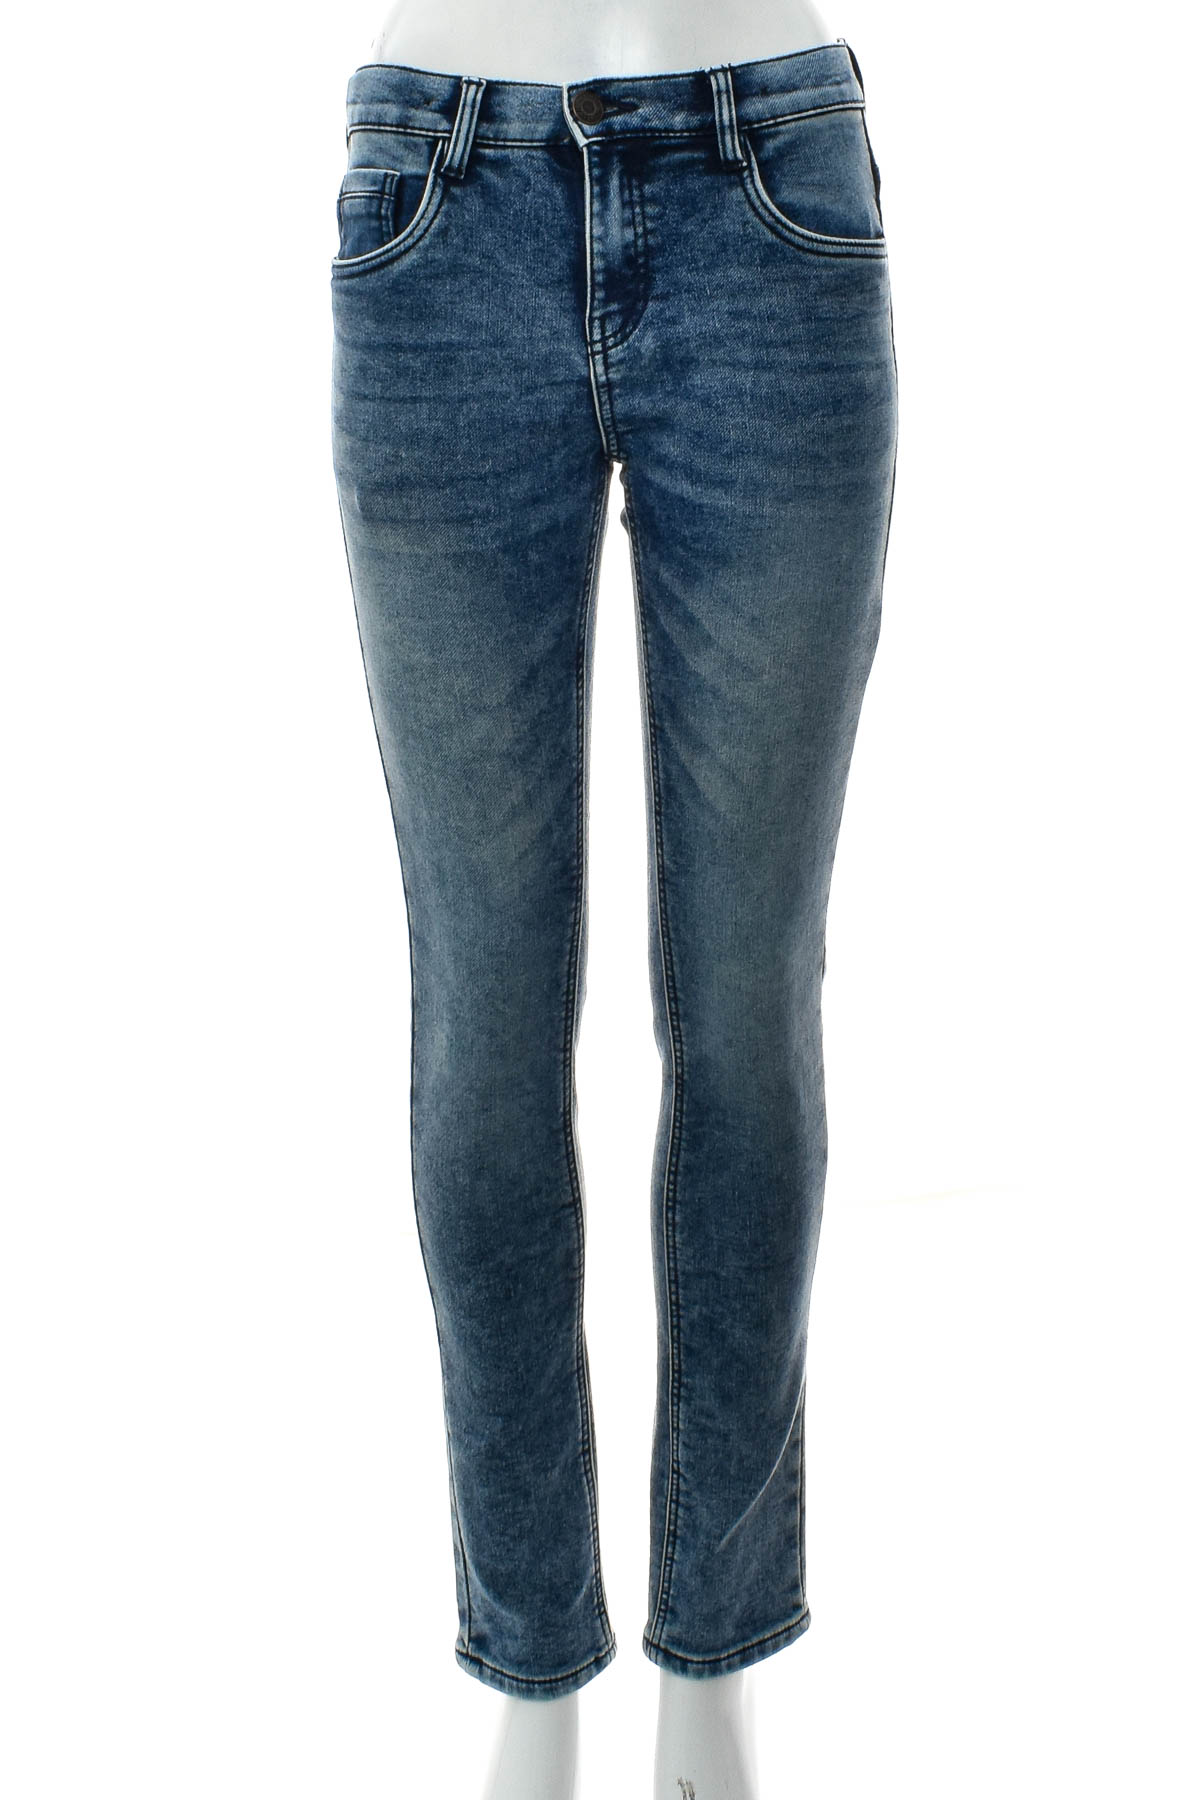 Jeans pentru fată - C&A - 0